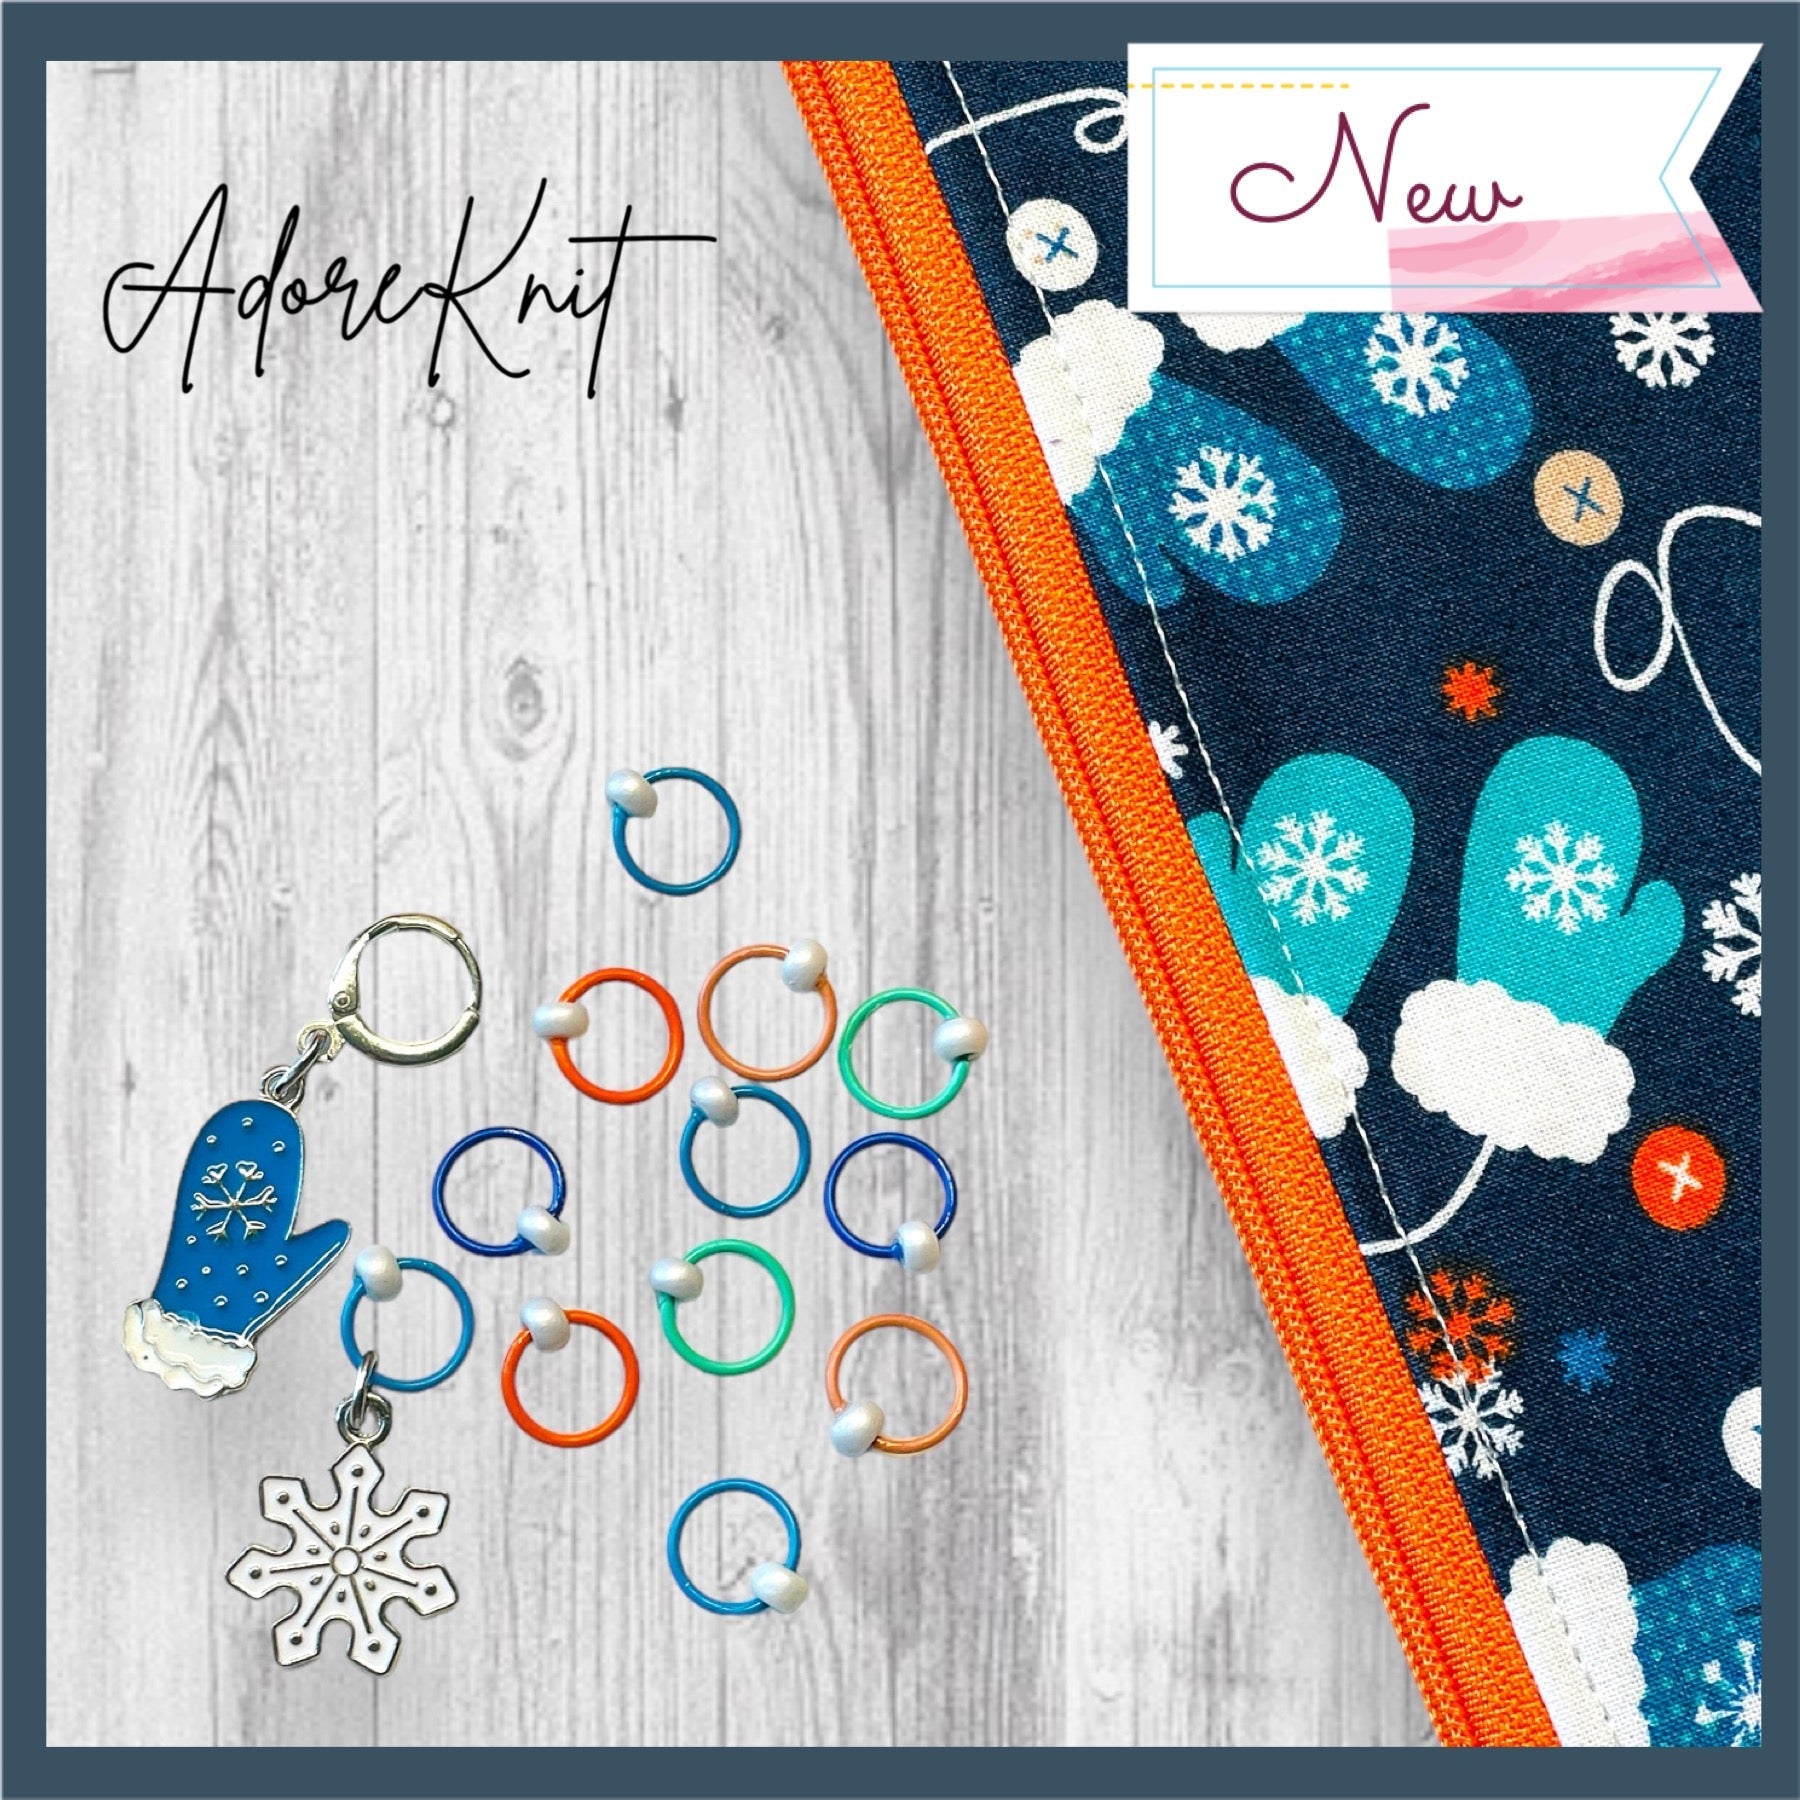 I Love Knitting Progress and Stitch Markers – AdoreKnit